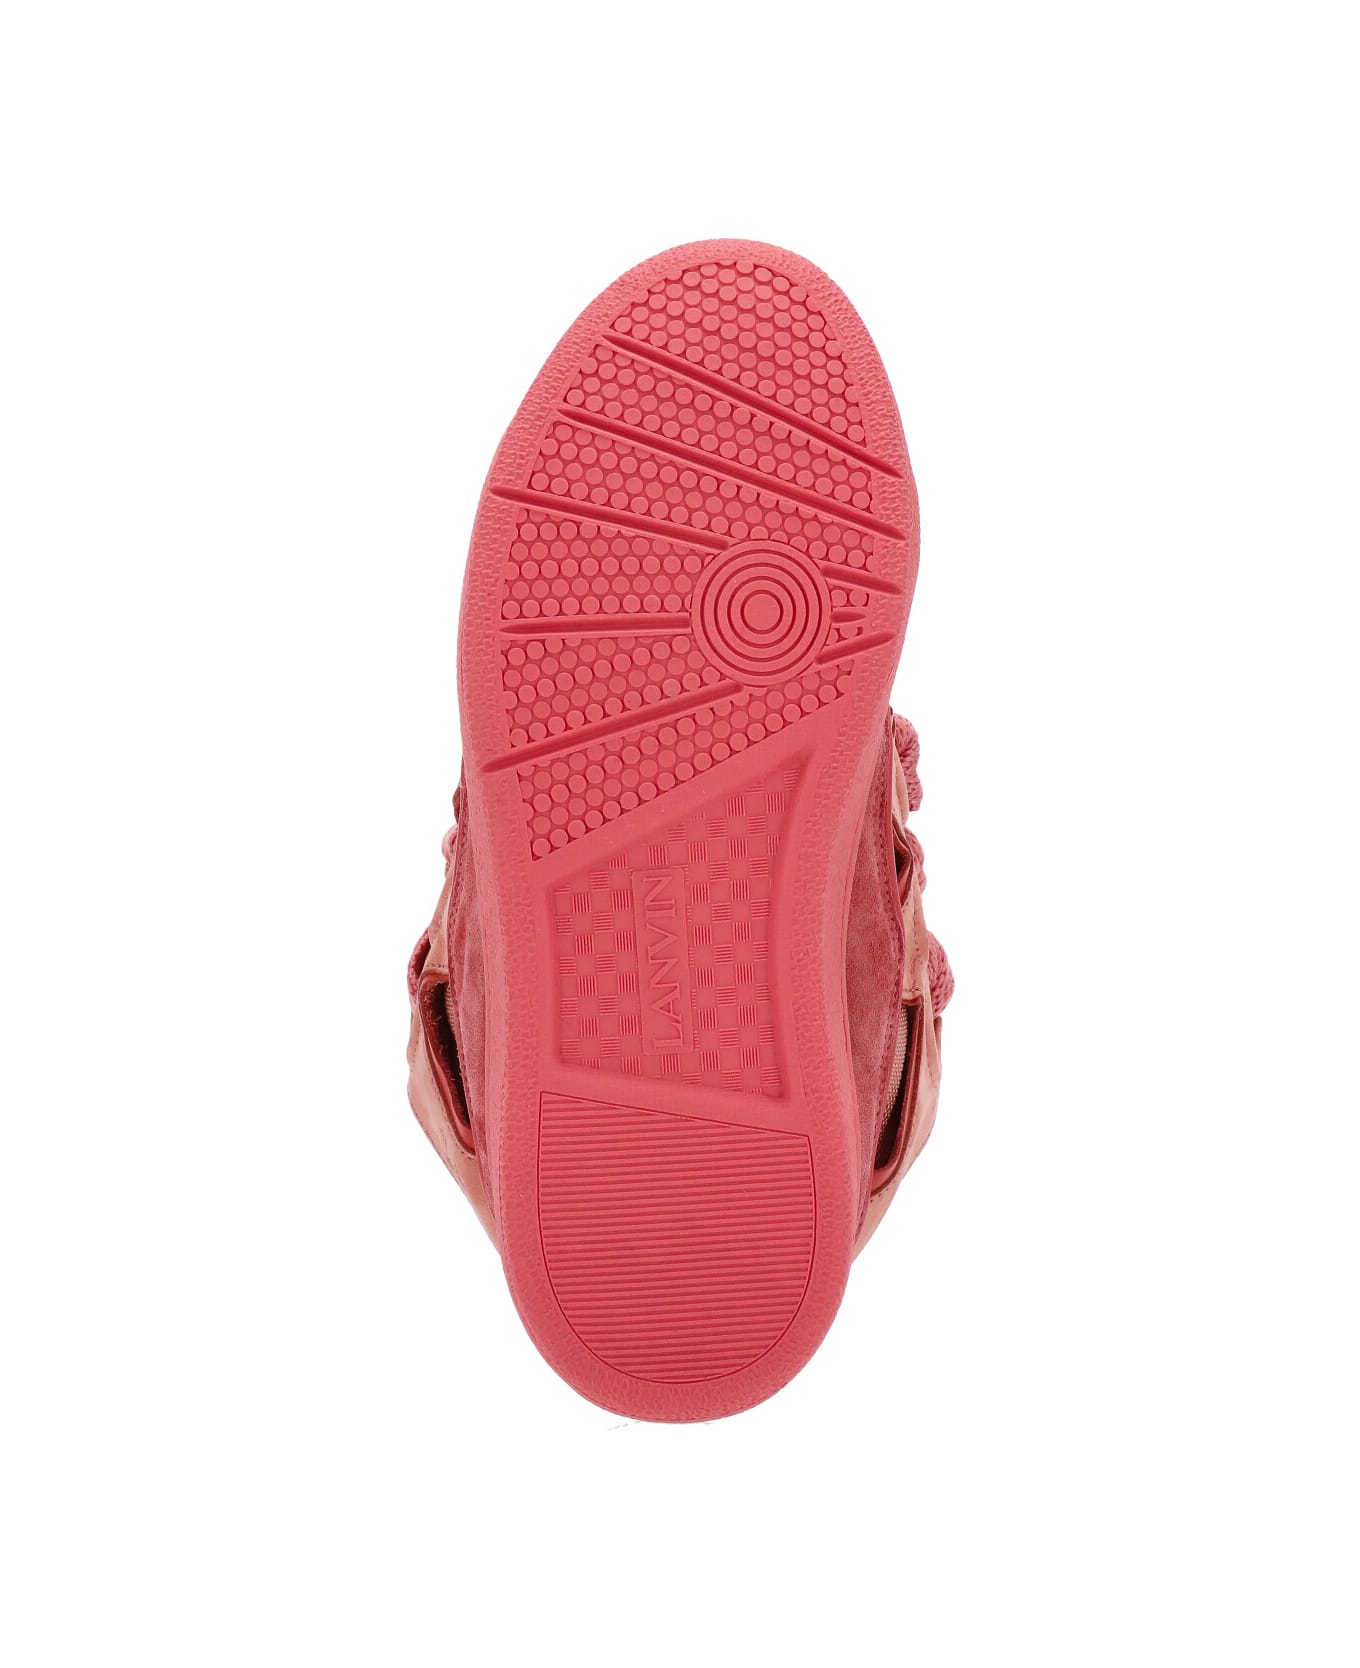 Lanvin Curb Sneakers - Fuchsia スニーカー